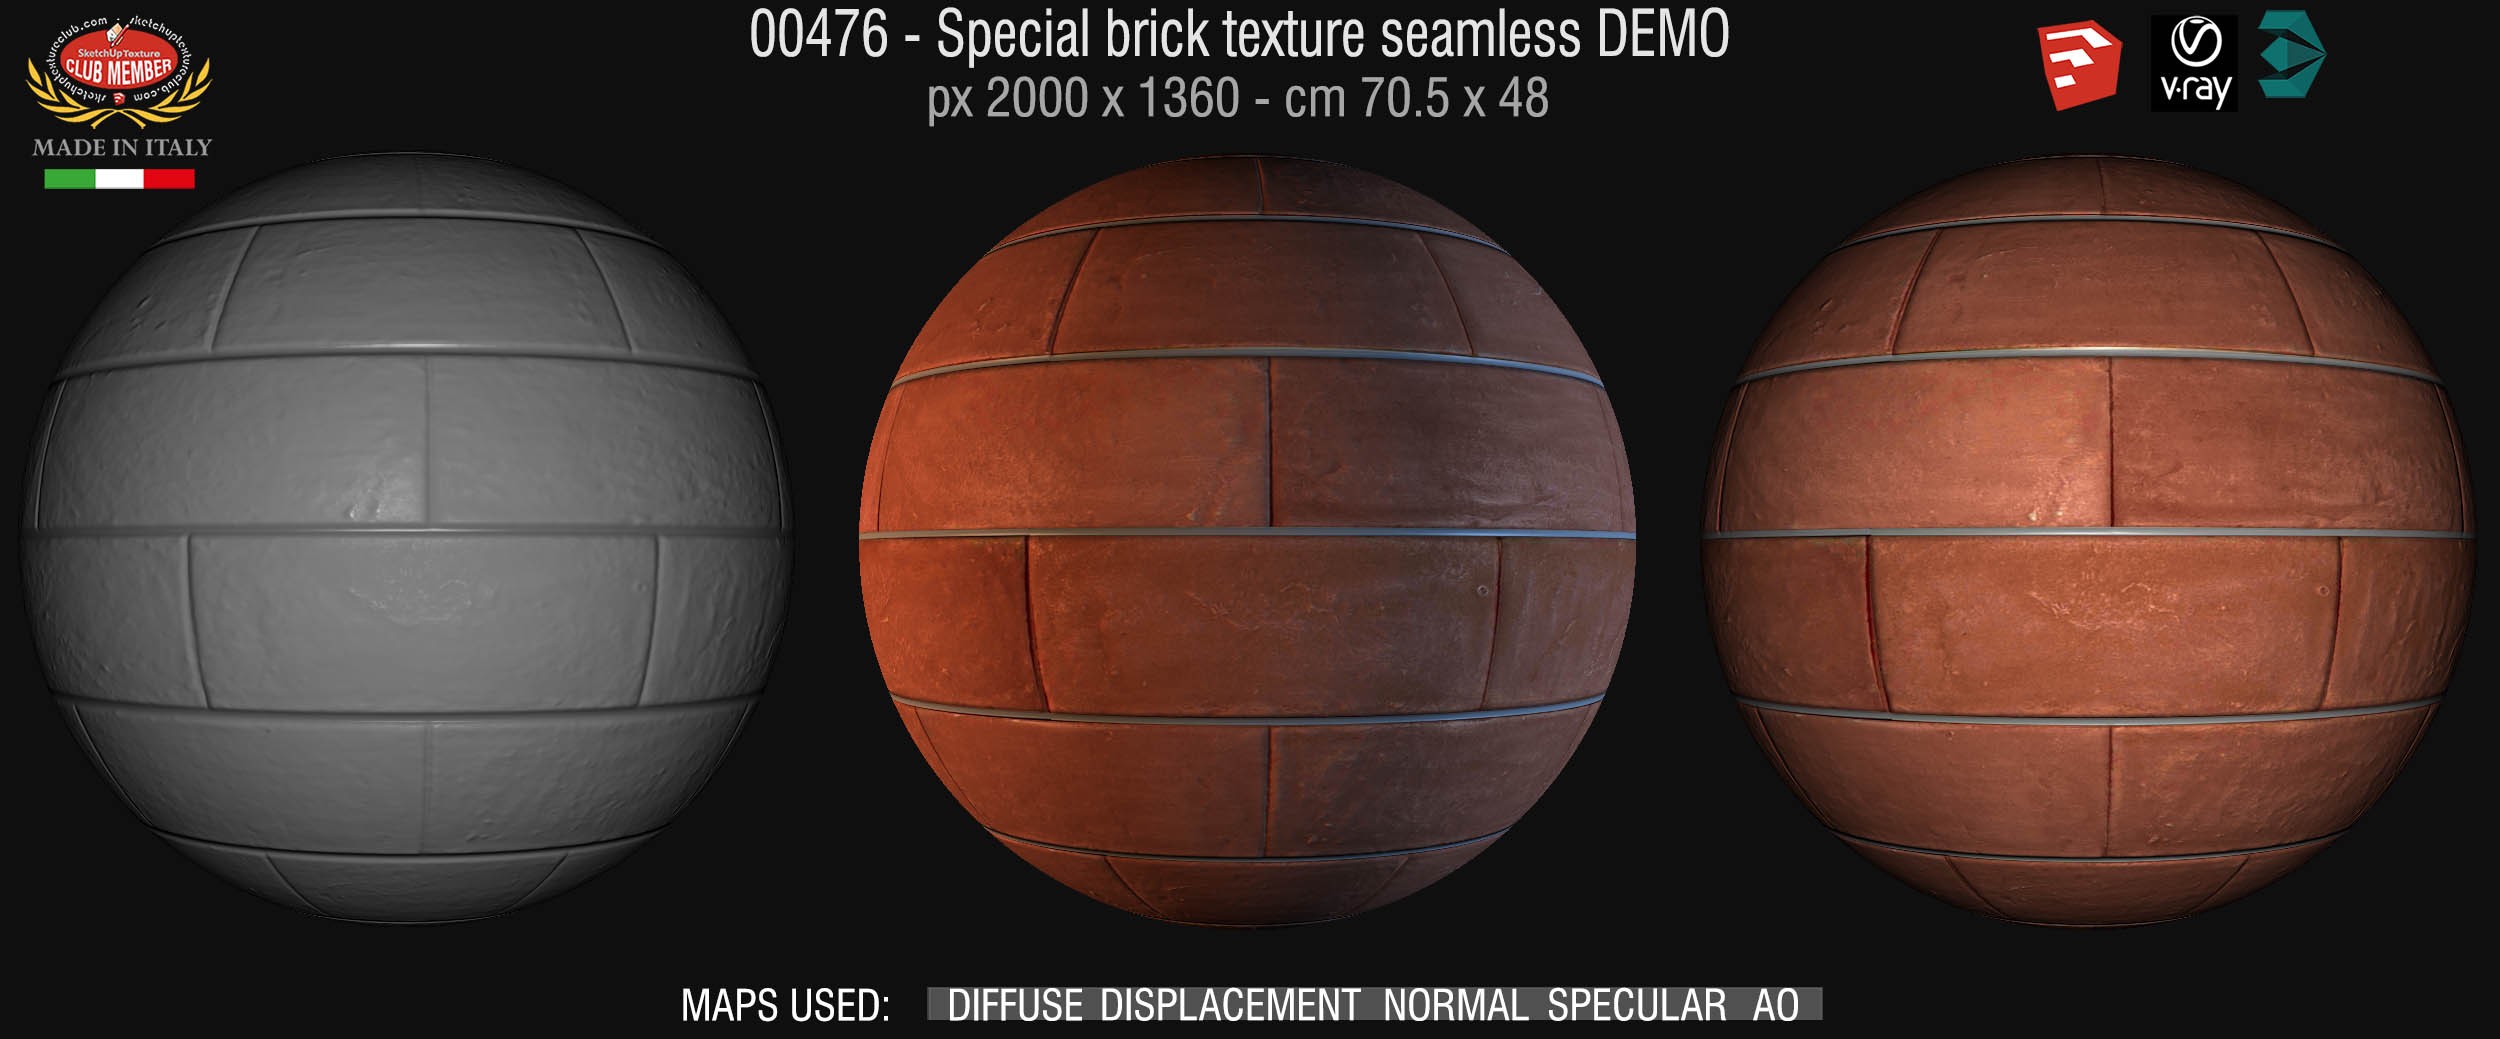 00476 Special bricks texture seamless + maps DEMO